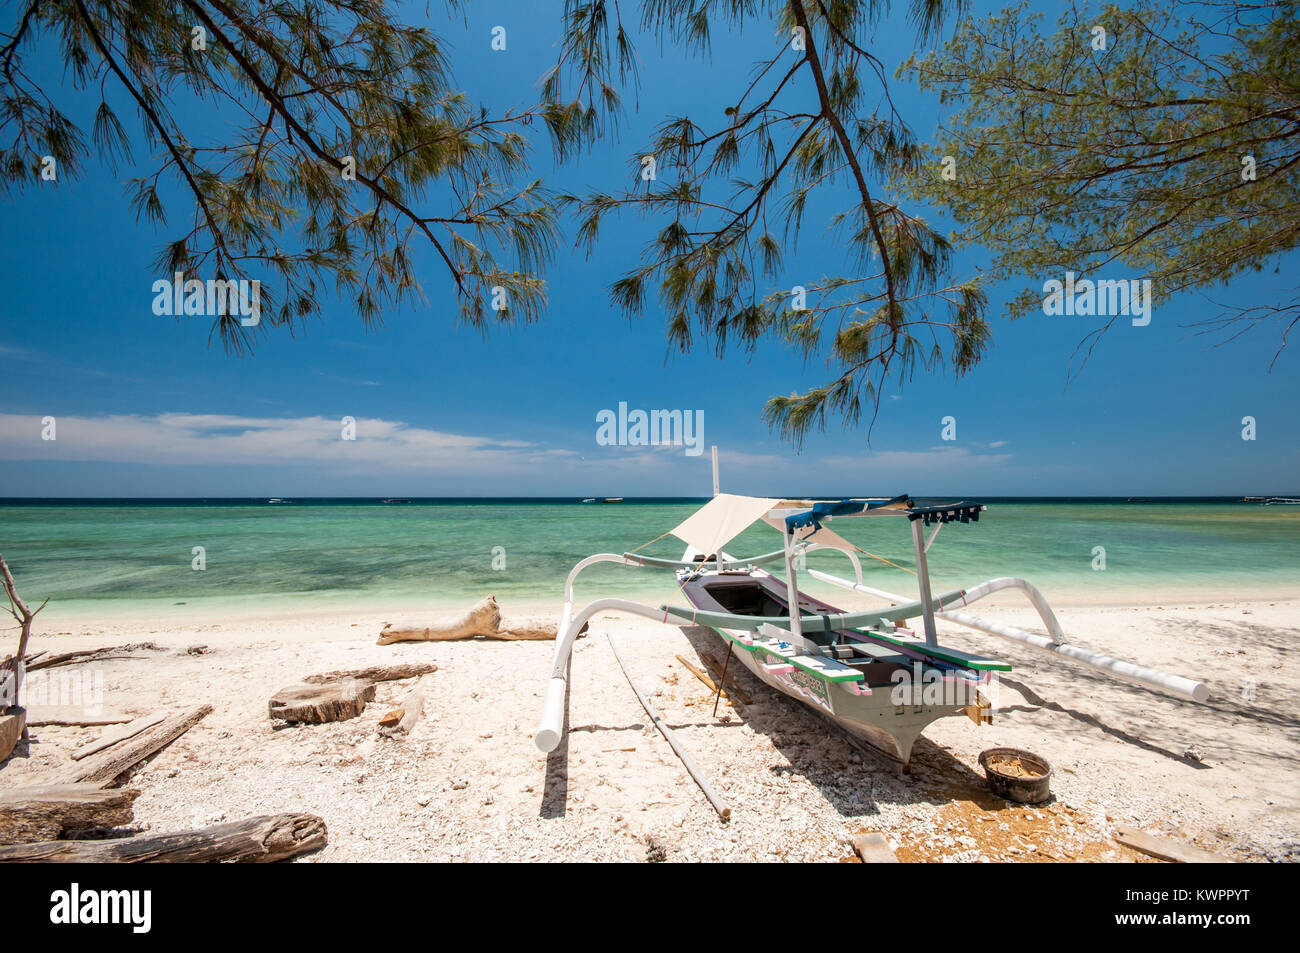 Bateau sur la plage, l'île de Gili Meno, Lombok, Indonésie Banque D'Images